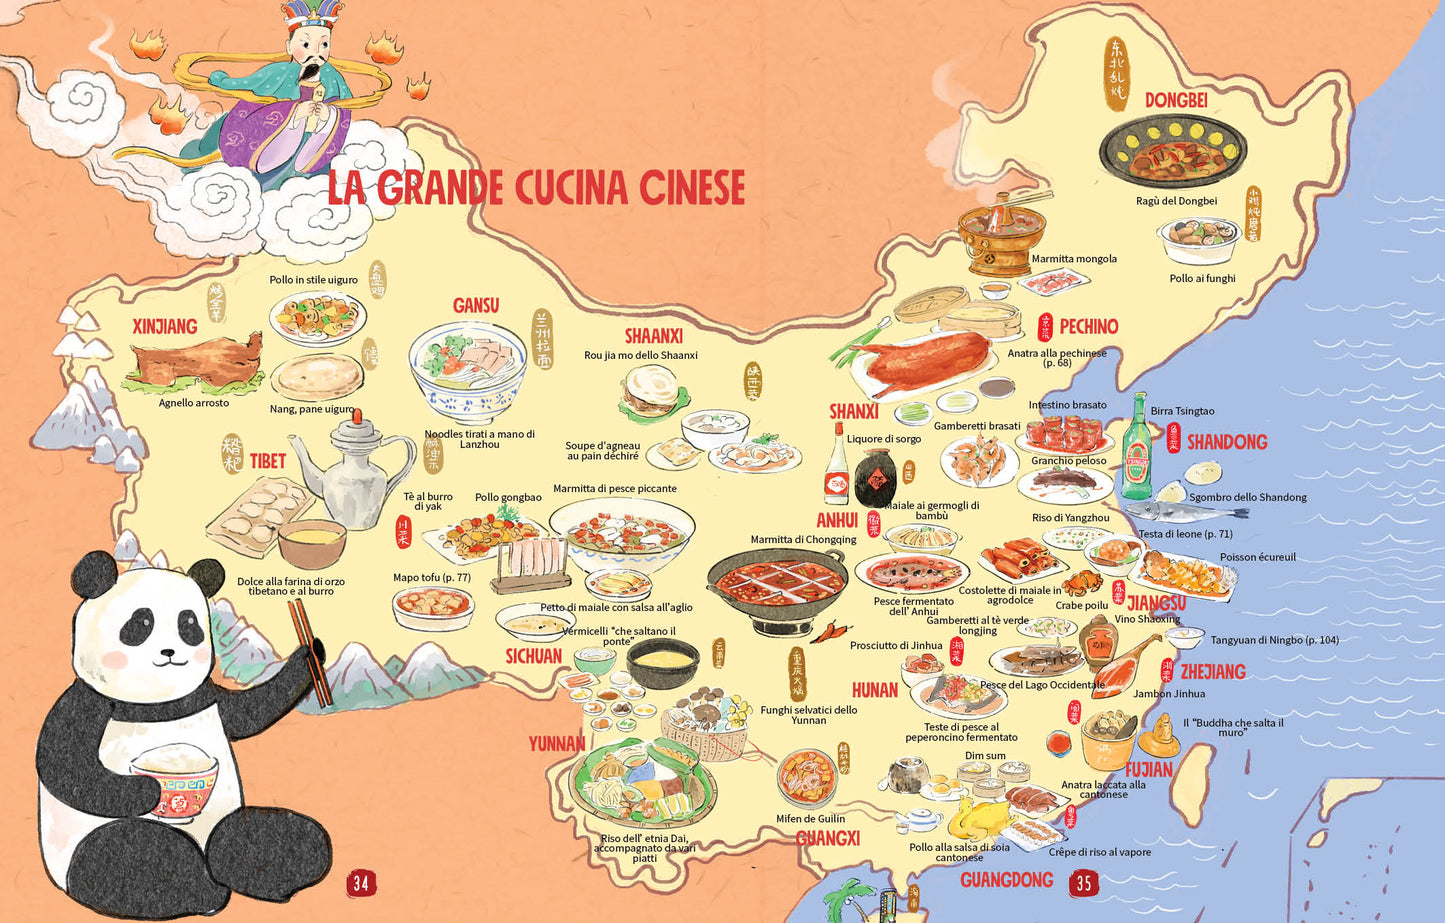 La cucina cinese illustrata::Le ricette e le curiosità per conoscere tutto sulla cultura gastronomica della Cina